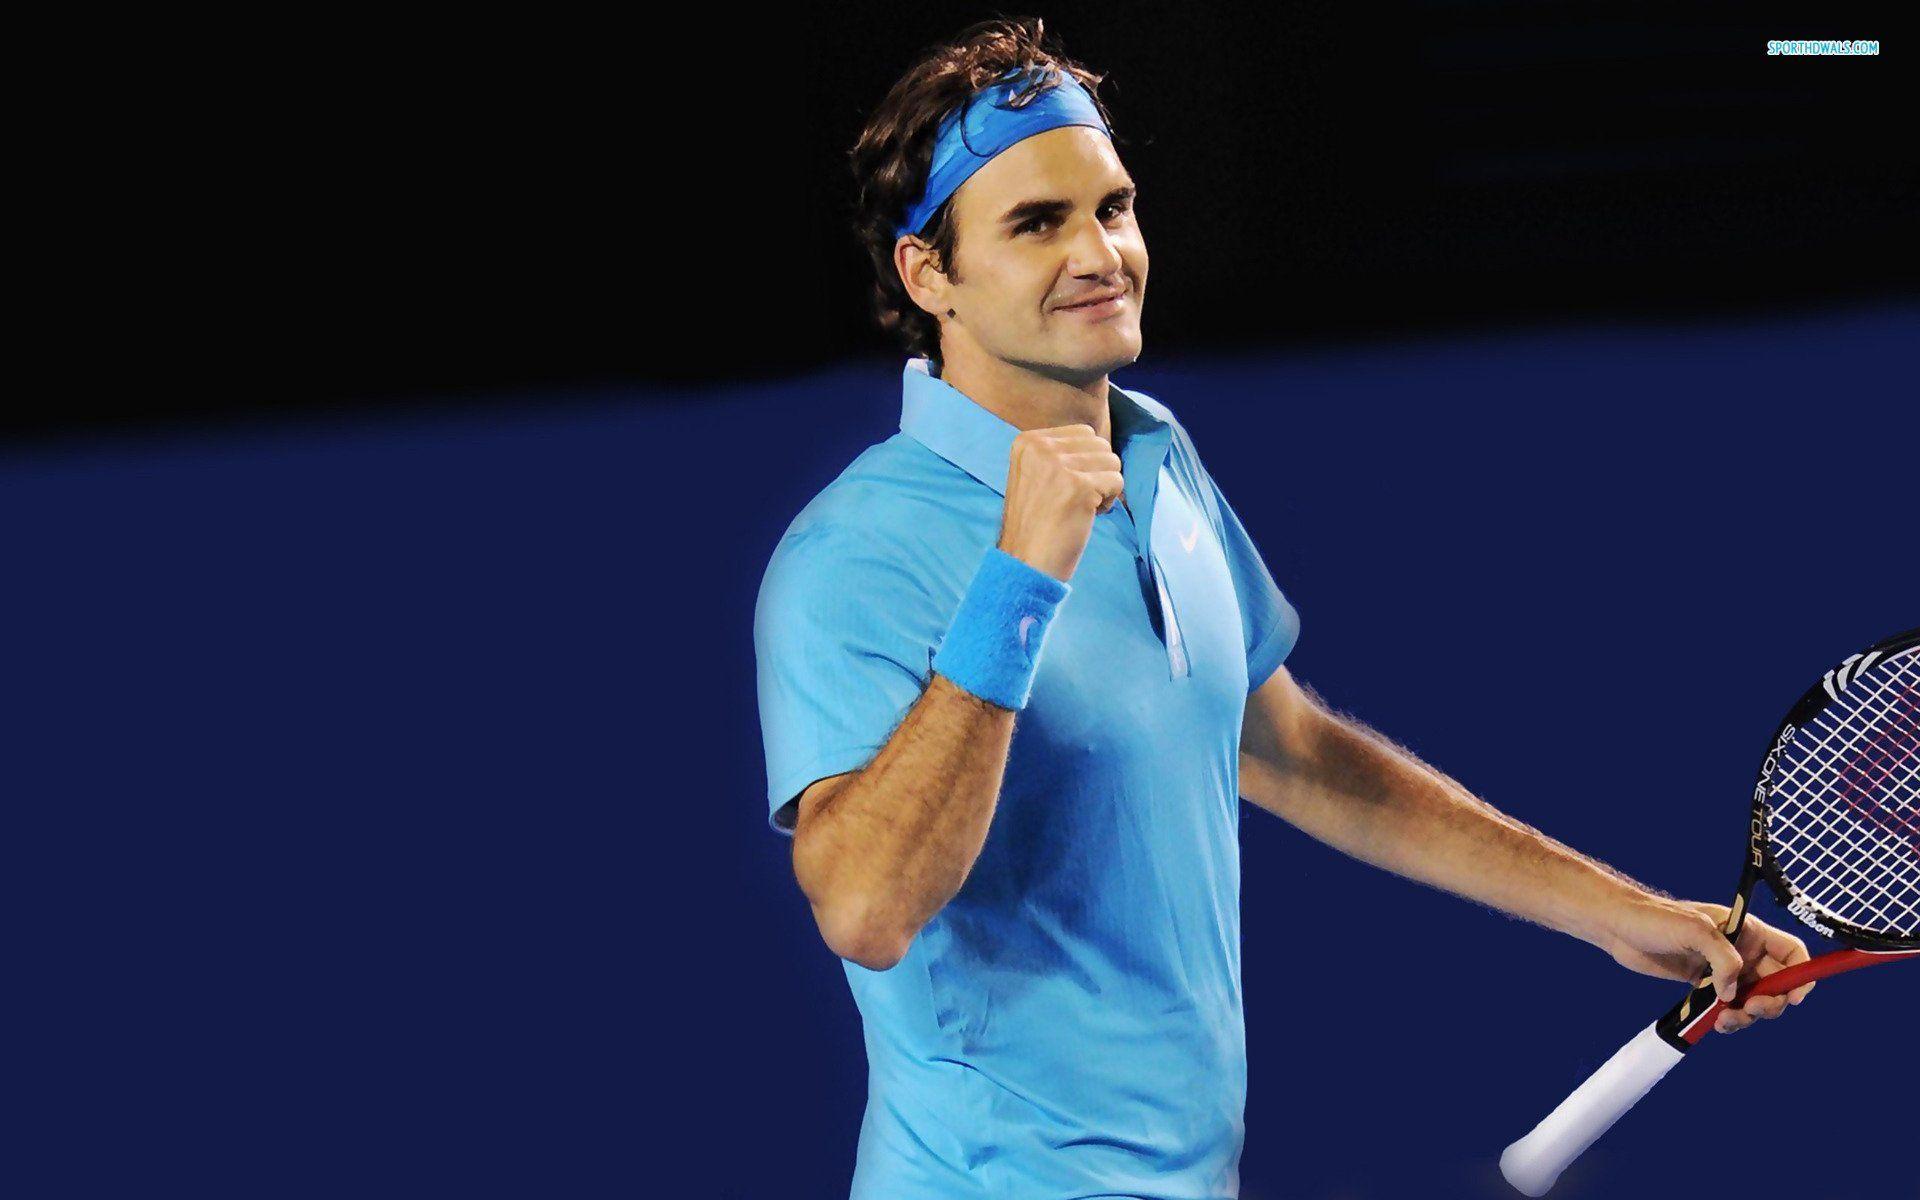 Ecstatic Roger Federer wallpaper collection 44+